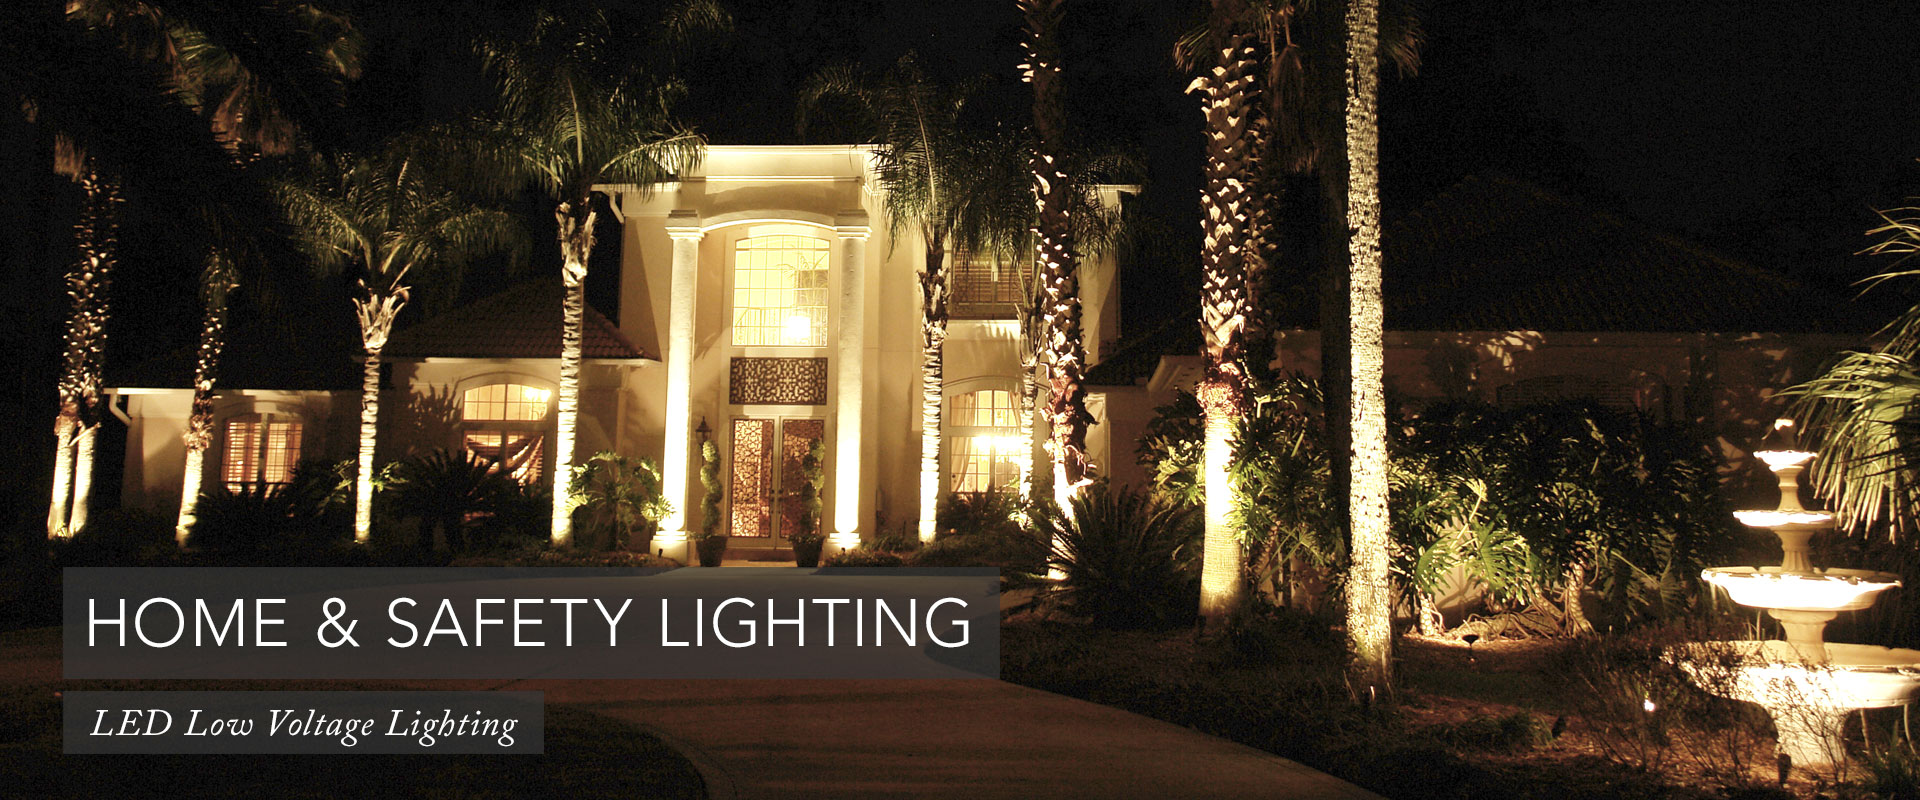 Home & Safety Landscape Lighting Hero-6